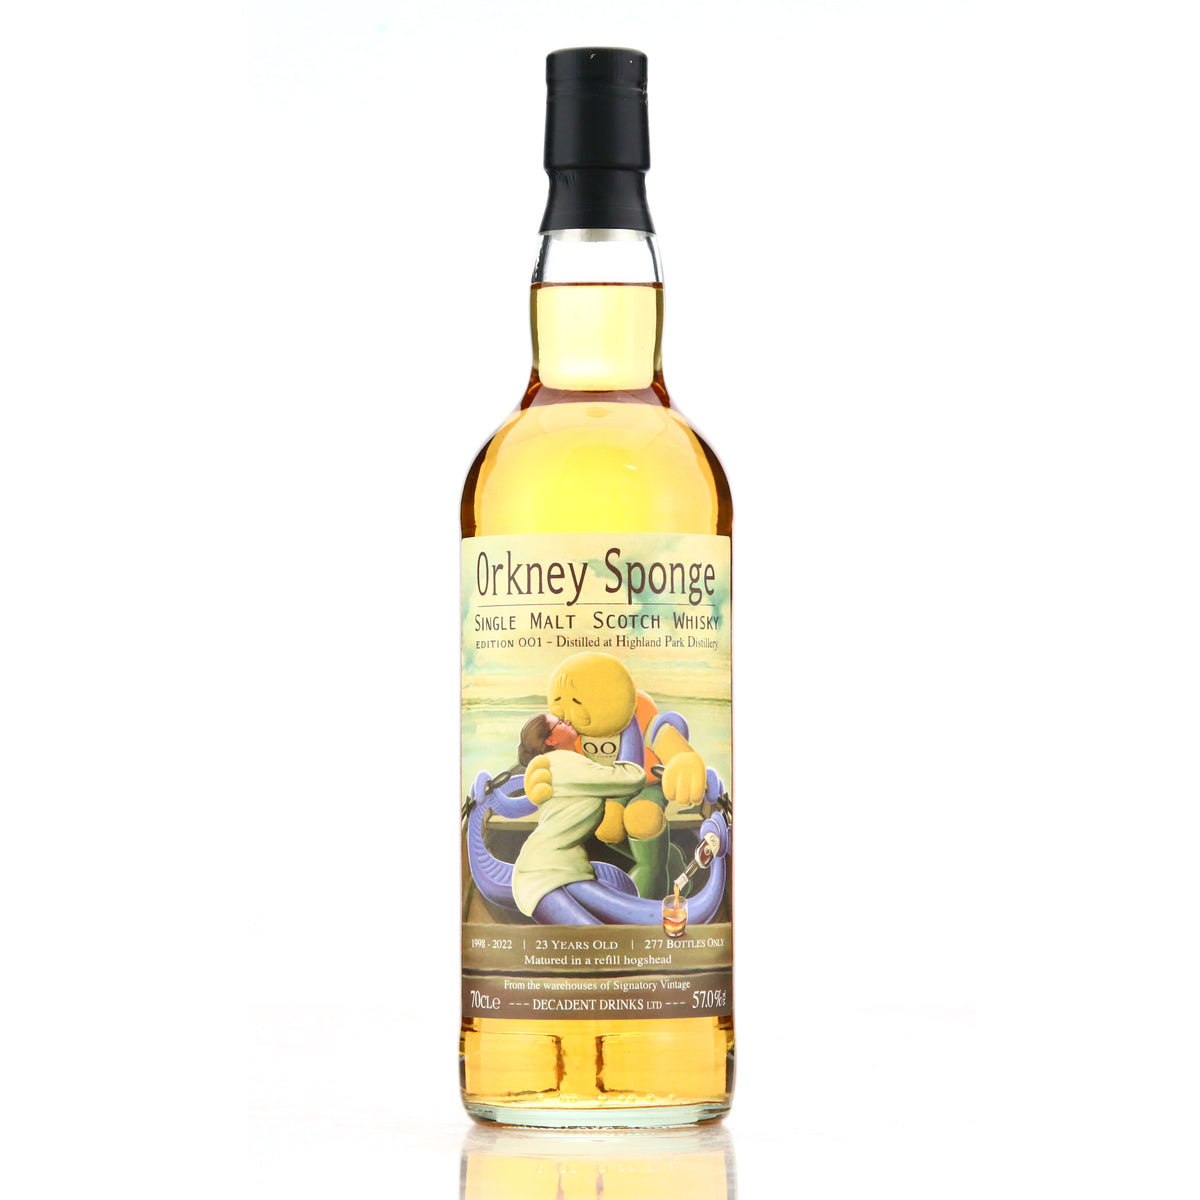 OrkneySponge Edition No. 1 1998 Highland Park 23 Year Old Single Cask Single Malt Scotch Whisky 700ml